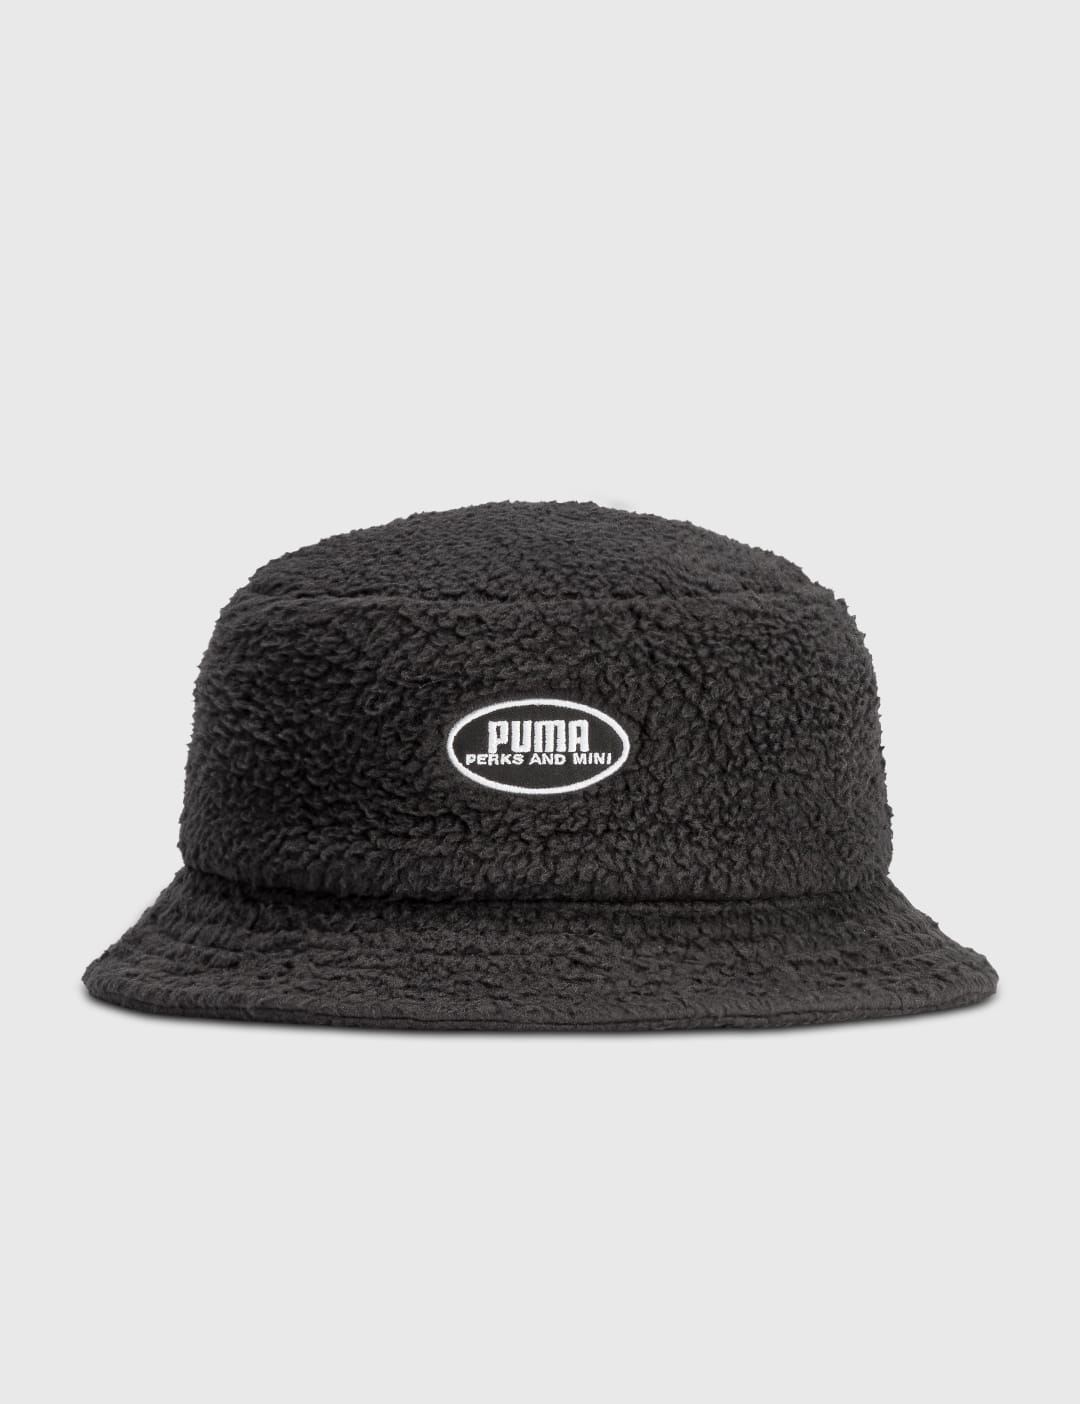 Puma x P.A.M Sherpa Bucket Hat